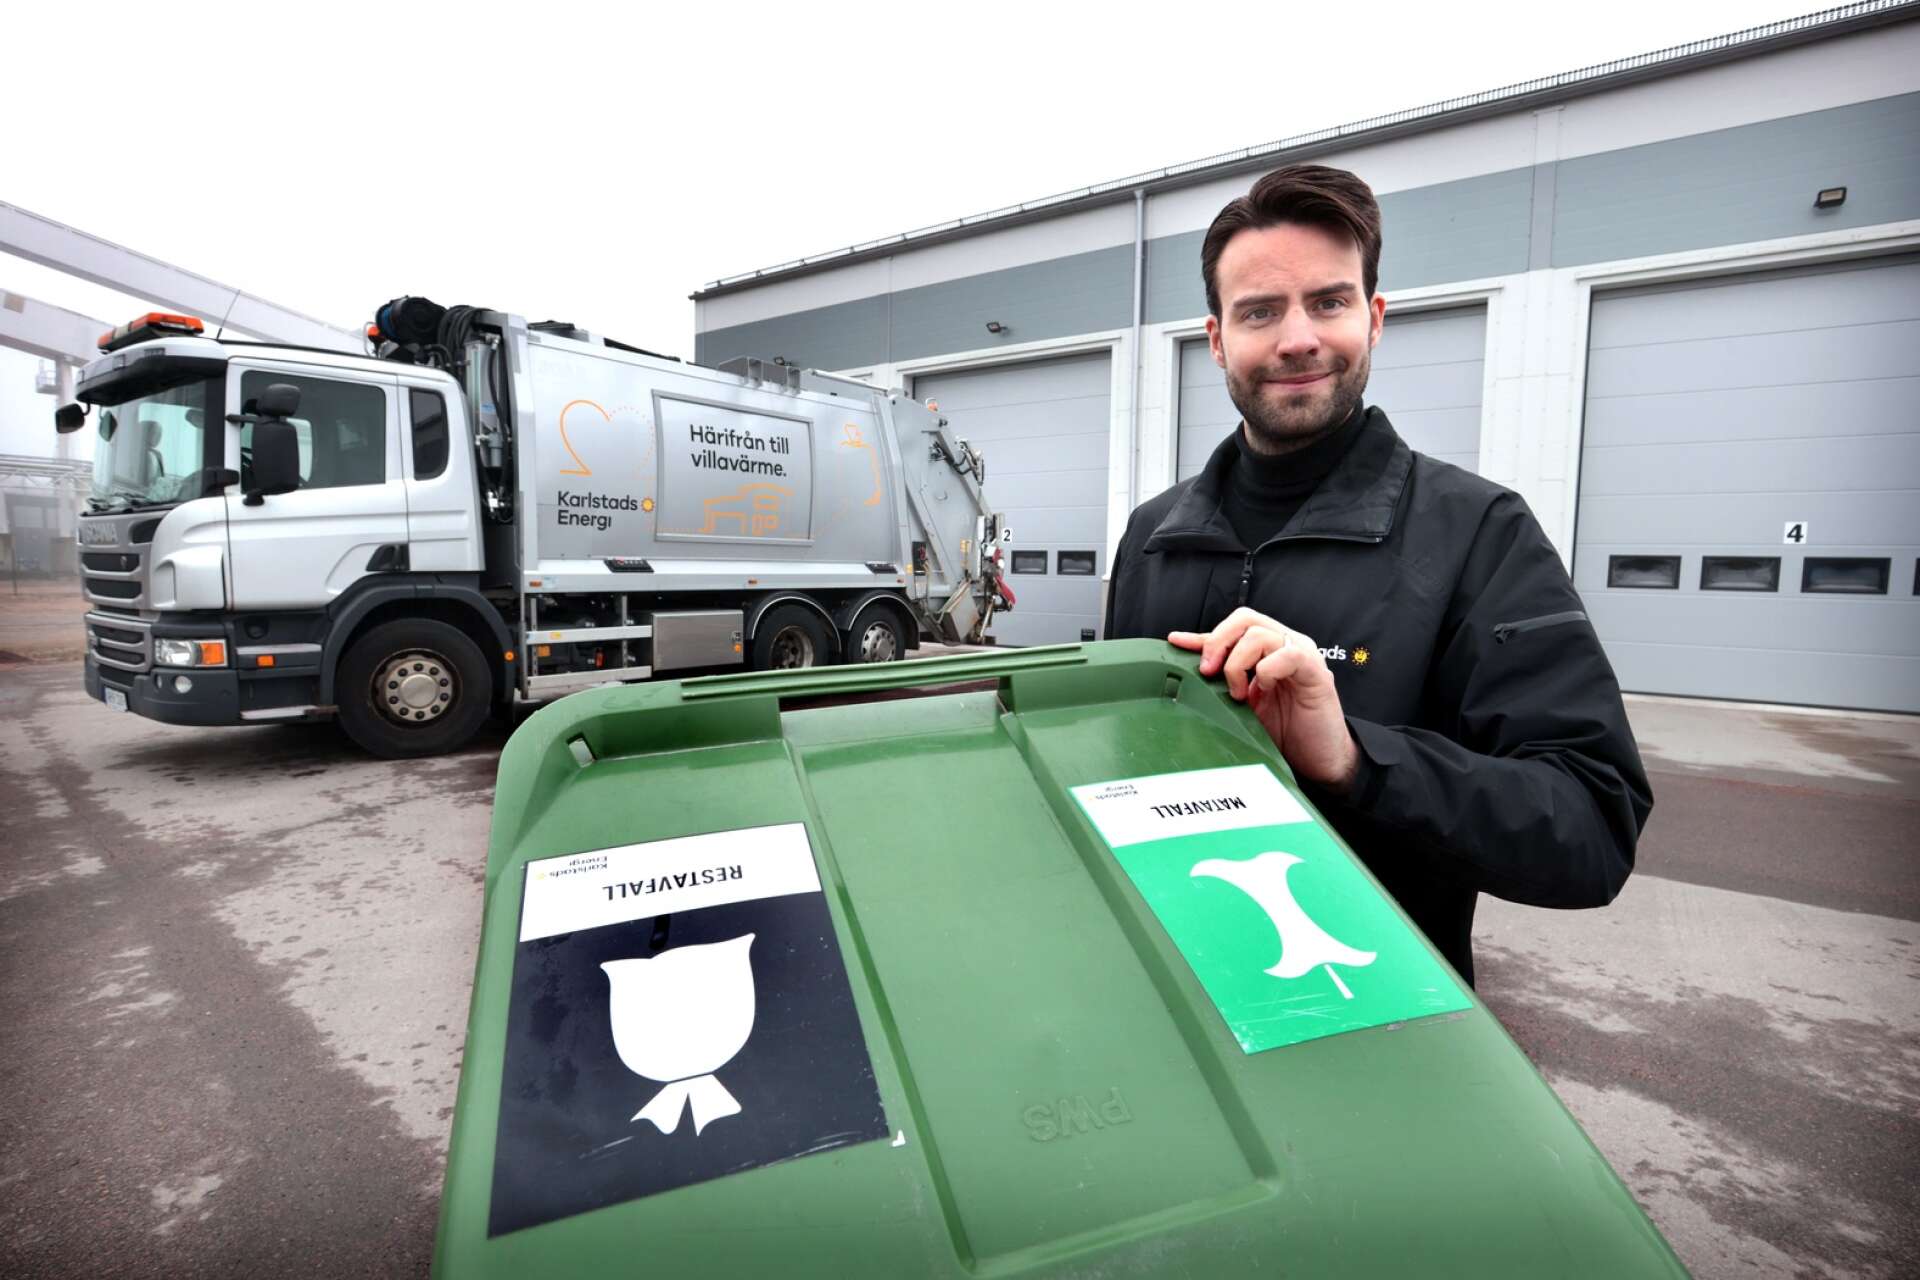 Karlstadsborna är bra på att sortera ut matavfall, men kan bli bättre på att inte slänga textil, plast- och pappersförpackningar i soporna, enligt Christoffer Henriksson, återvinningsstrateg på Karlstads energi.